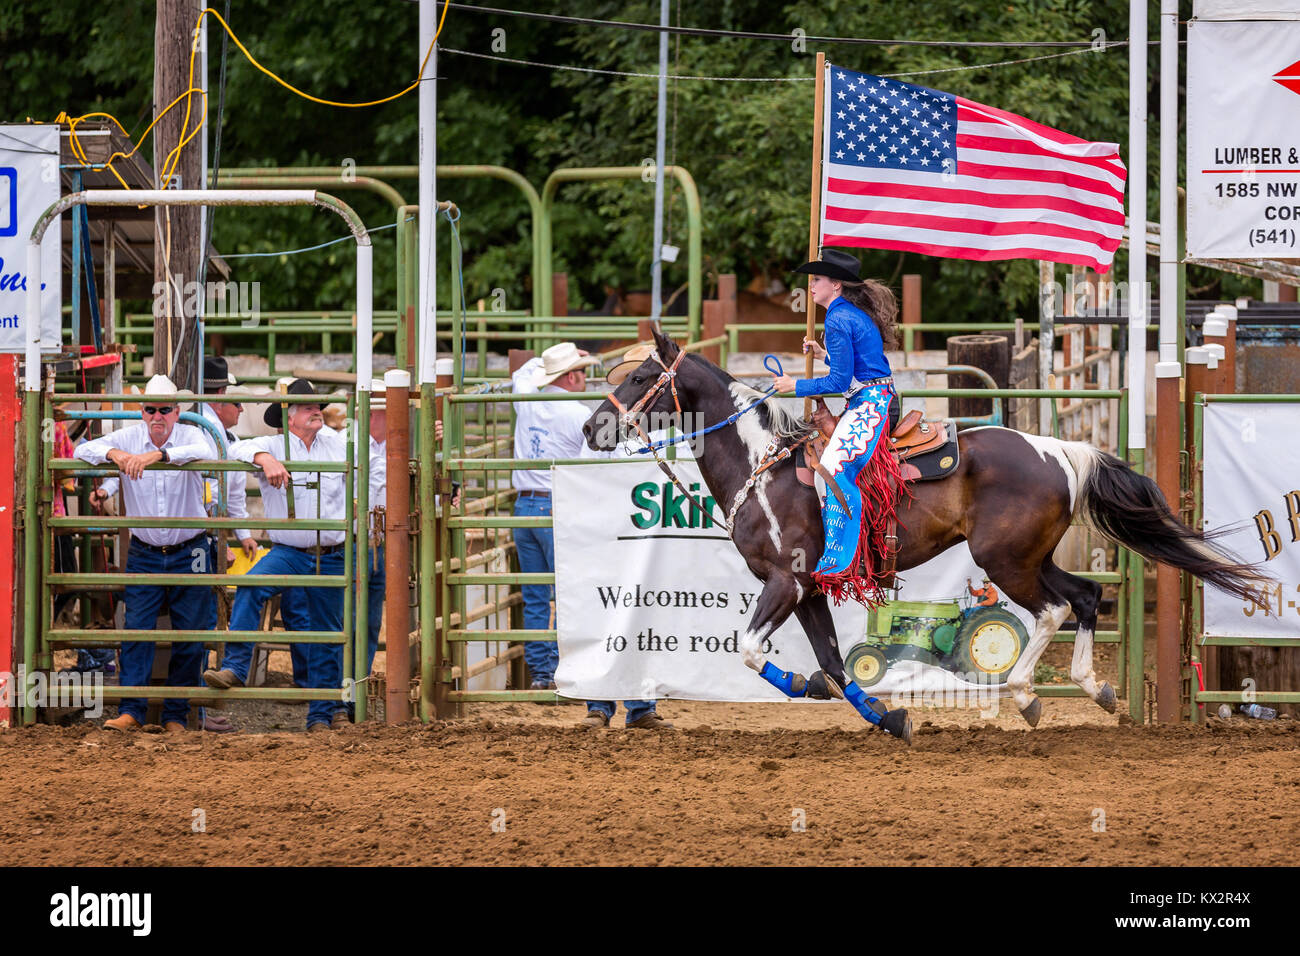 Cowgirl avec un drapeau américain à la cérémonie d'ouverture d'un rodéo, Philomath & Frolic Rodeo, Oregon, USA Banque D'Images